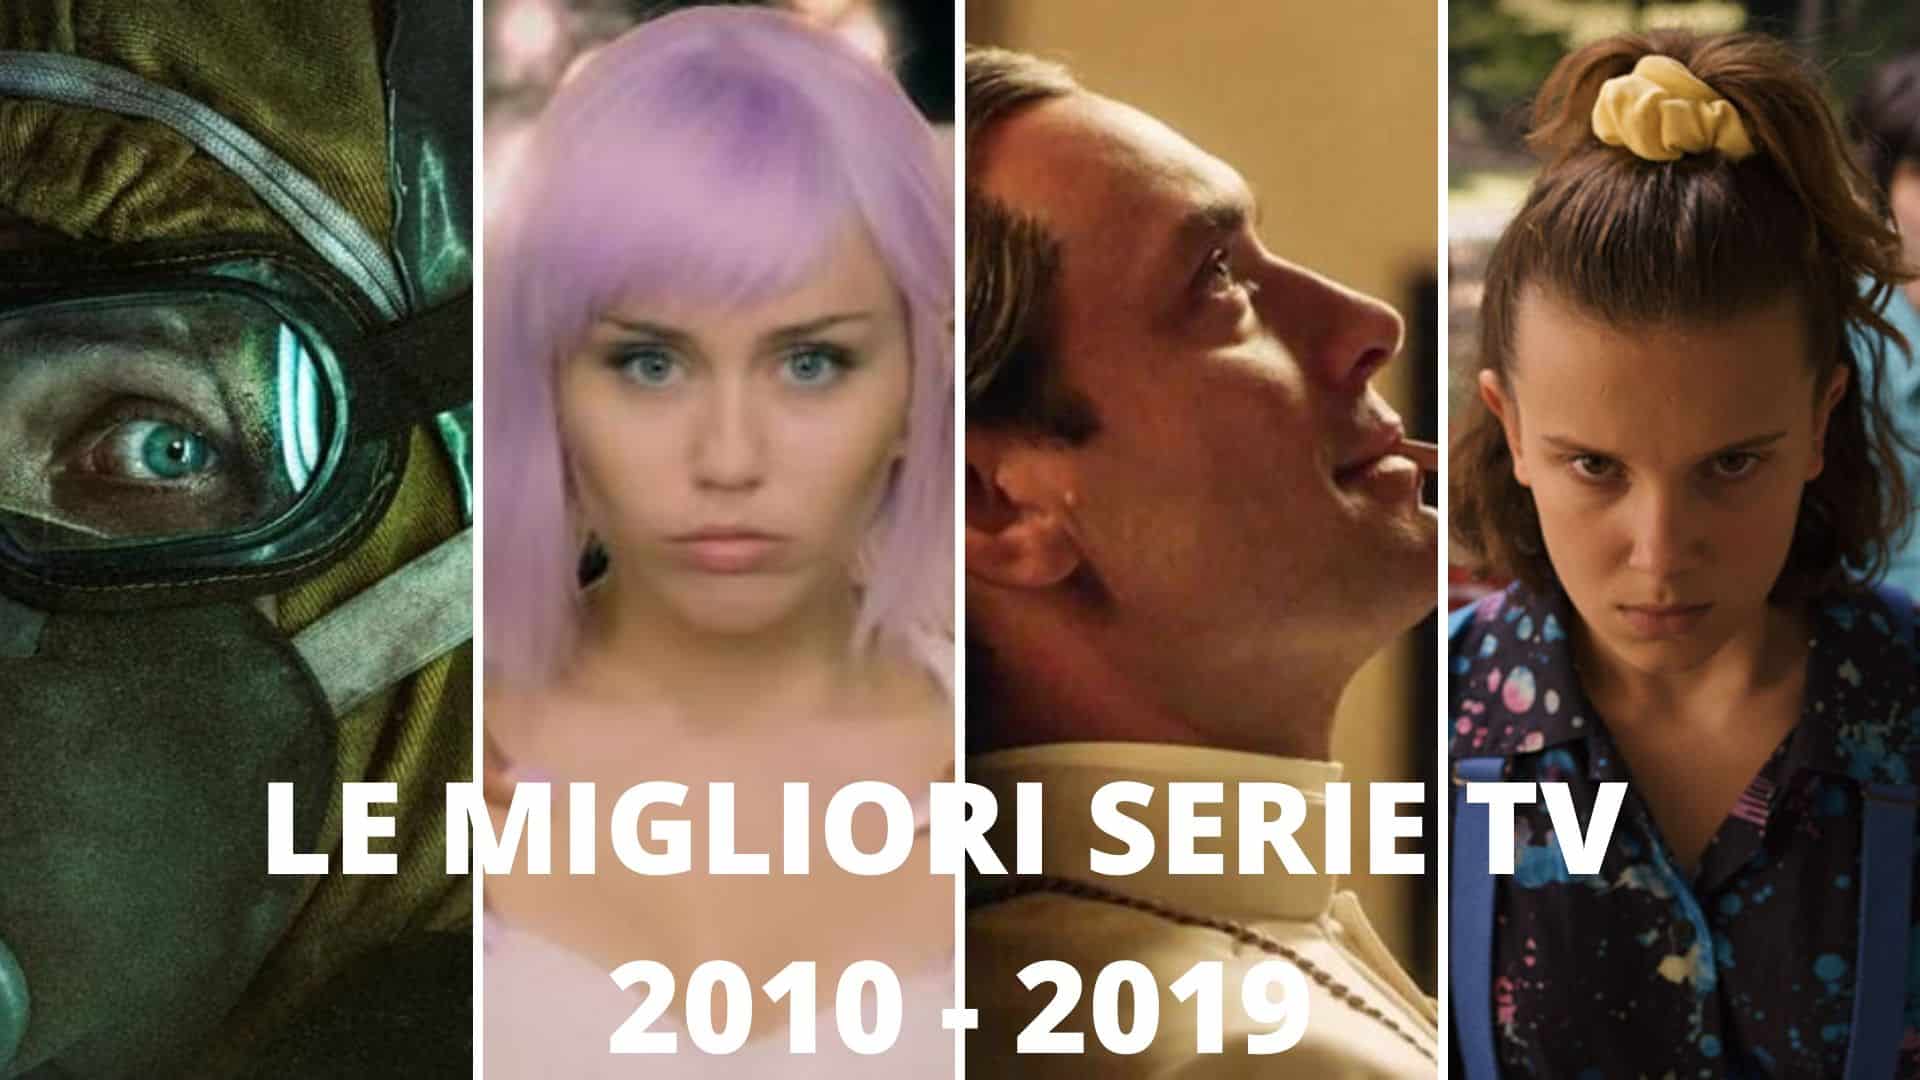 Le migliori serie TV del decennio 2010-2019 secondo Cinematographe.it